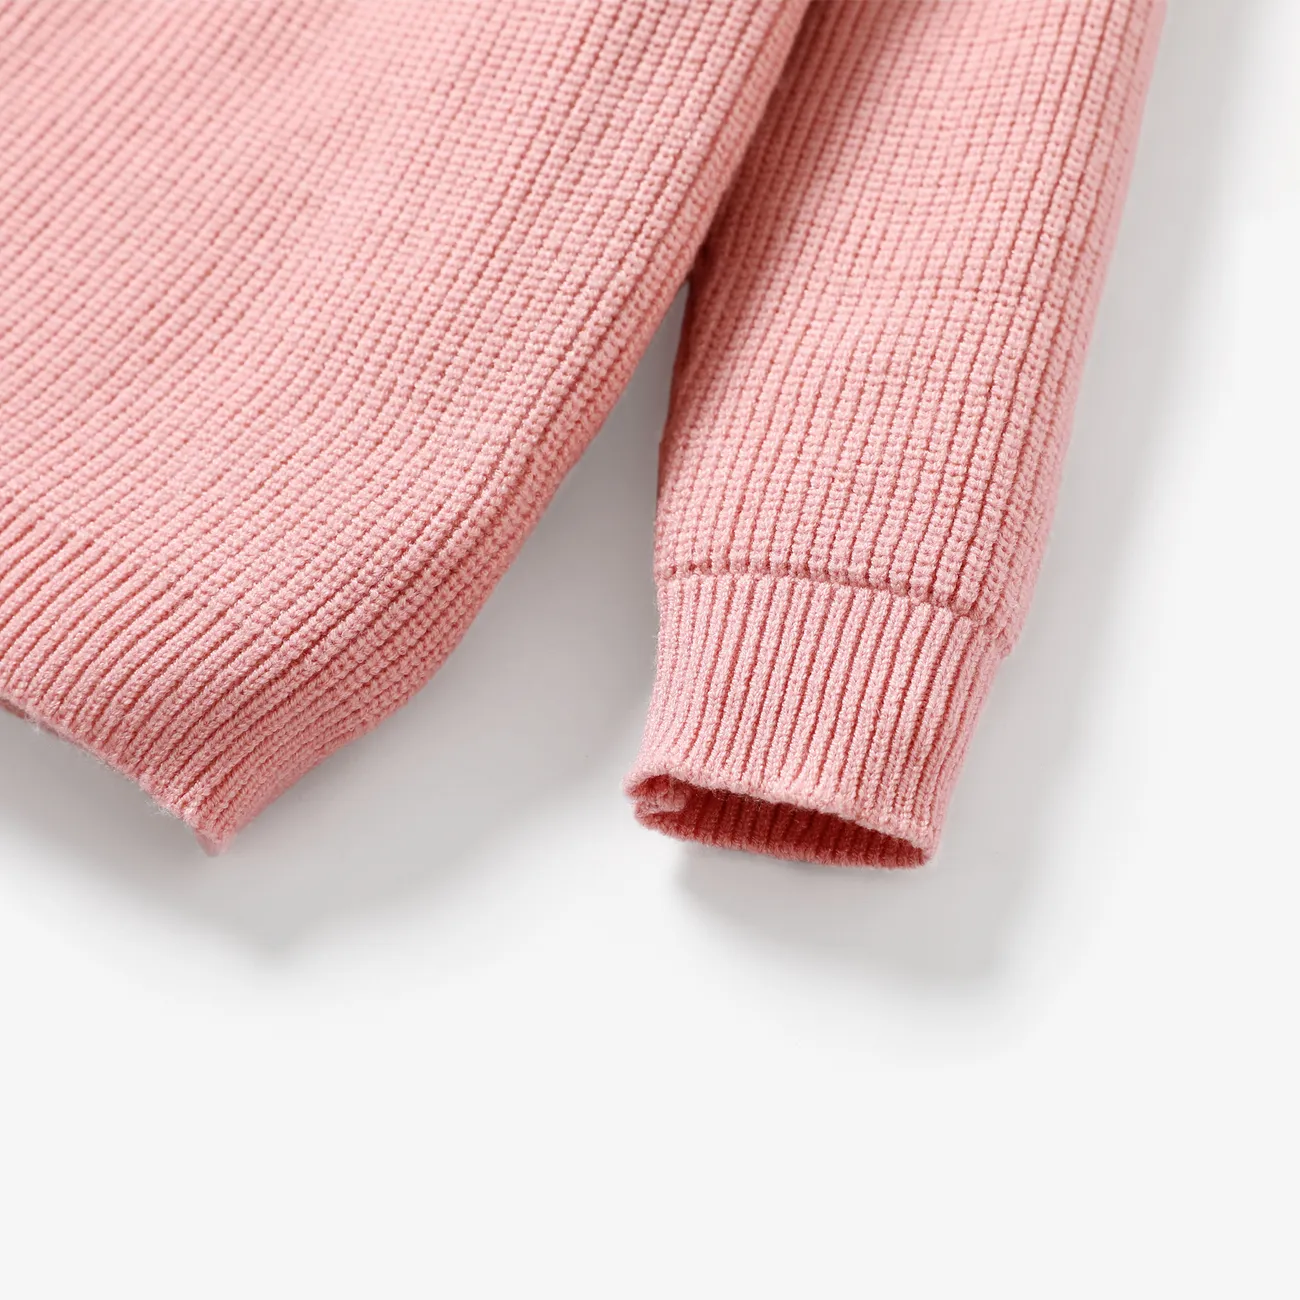 Kleinkind/Kind Mädchen/Junge Massiver Schulter-Design-Pullover  rosa big image 1